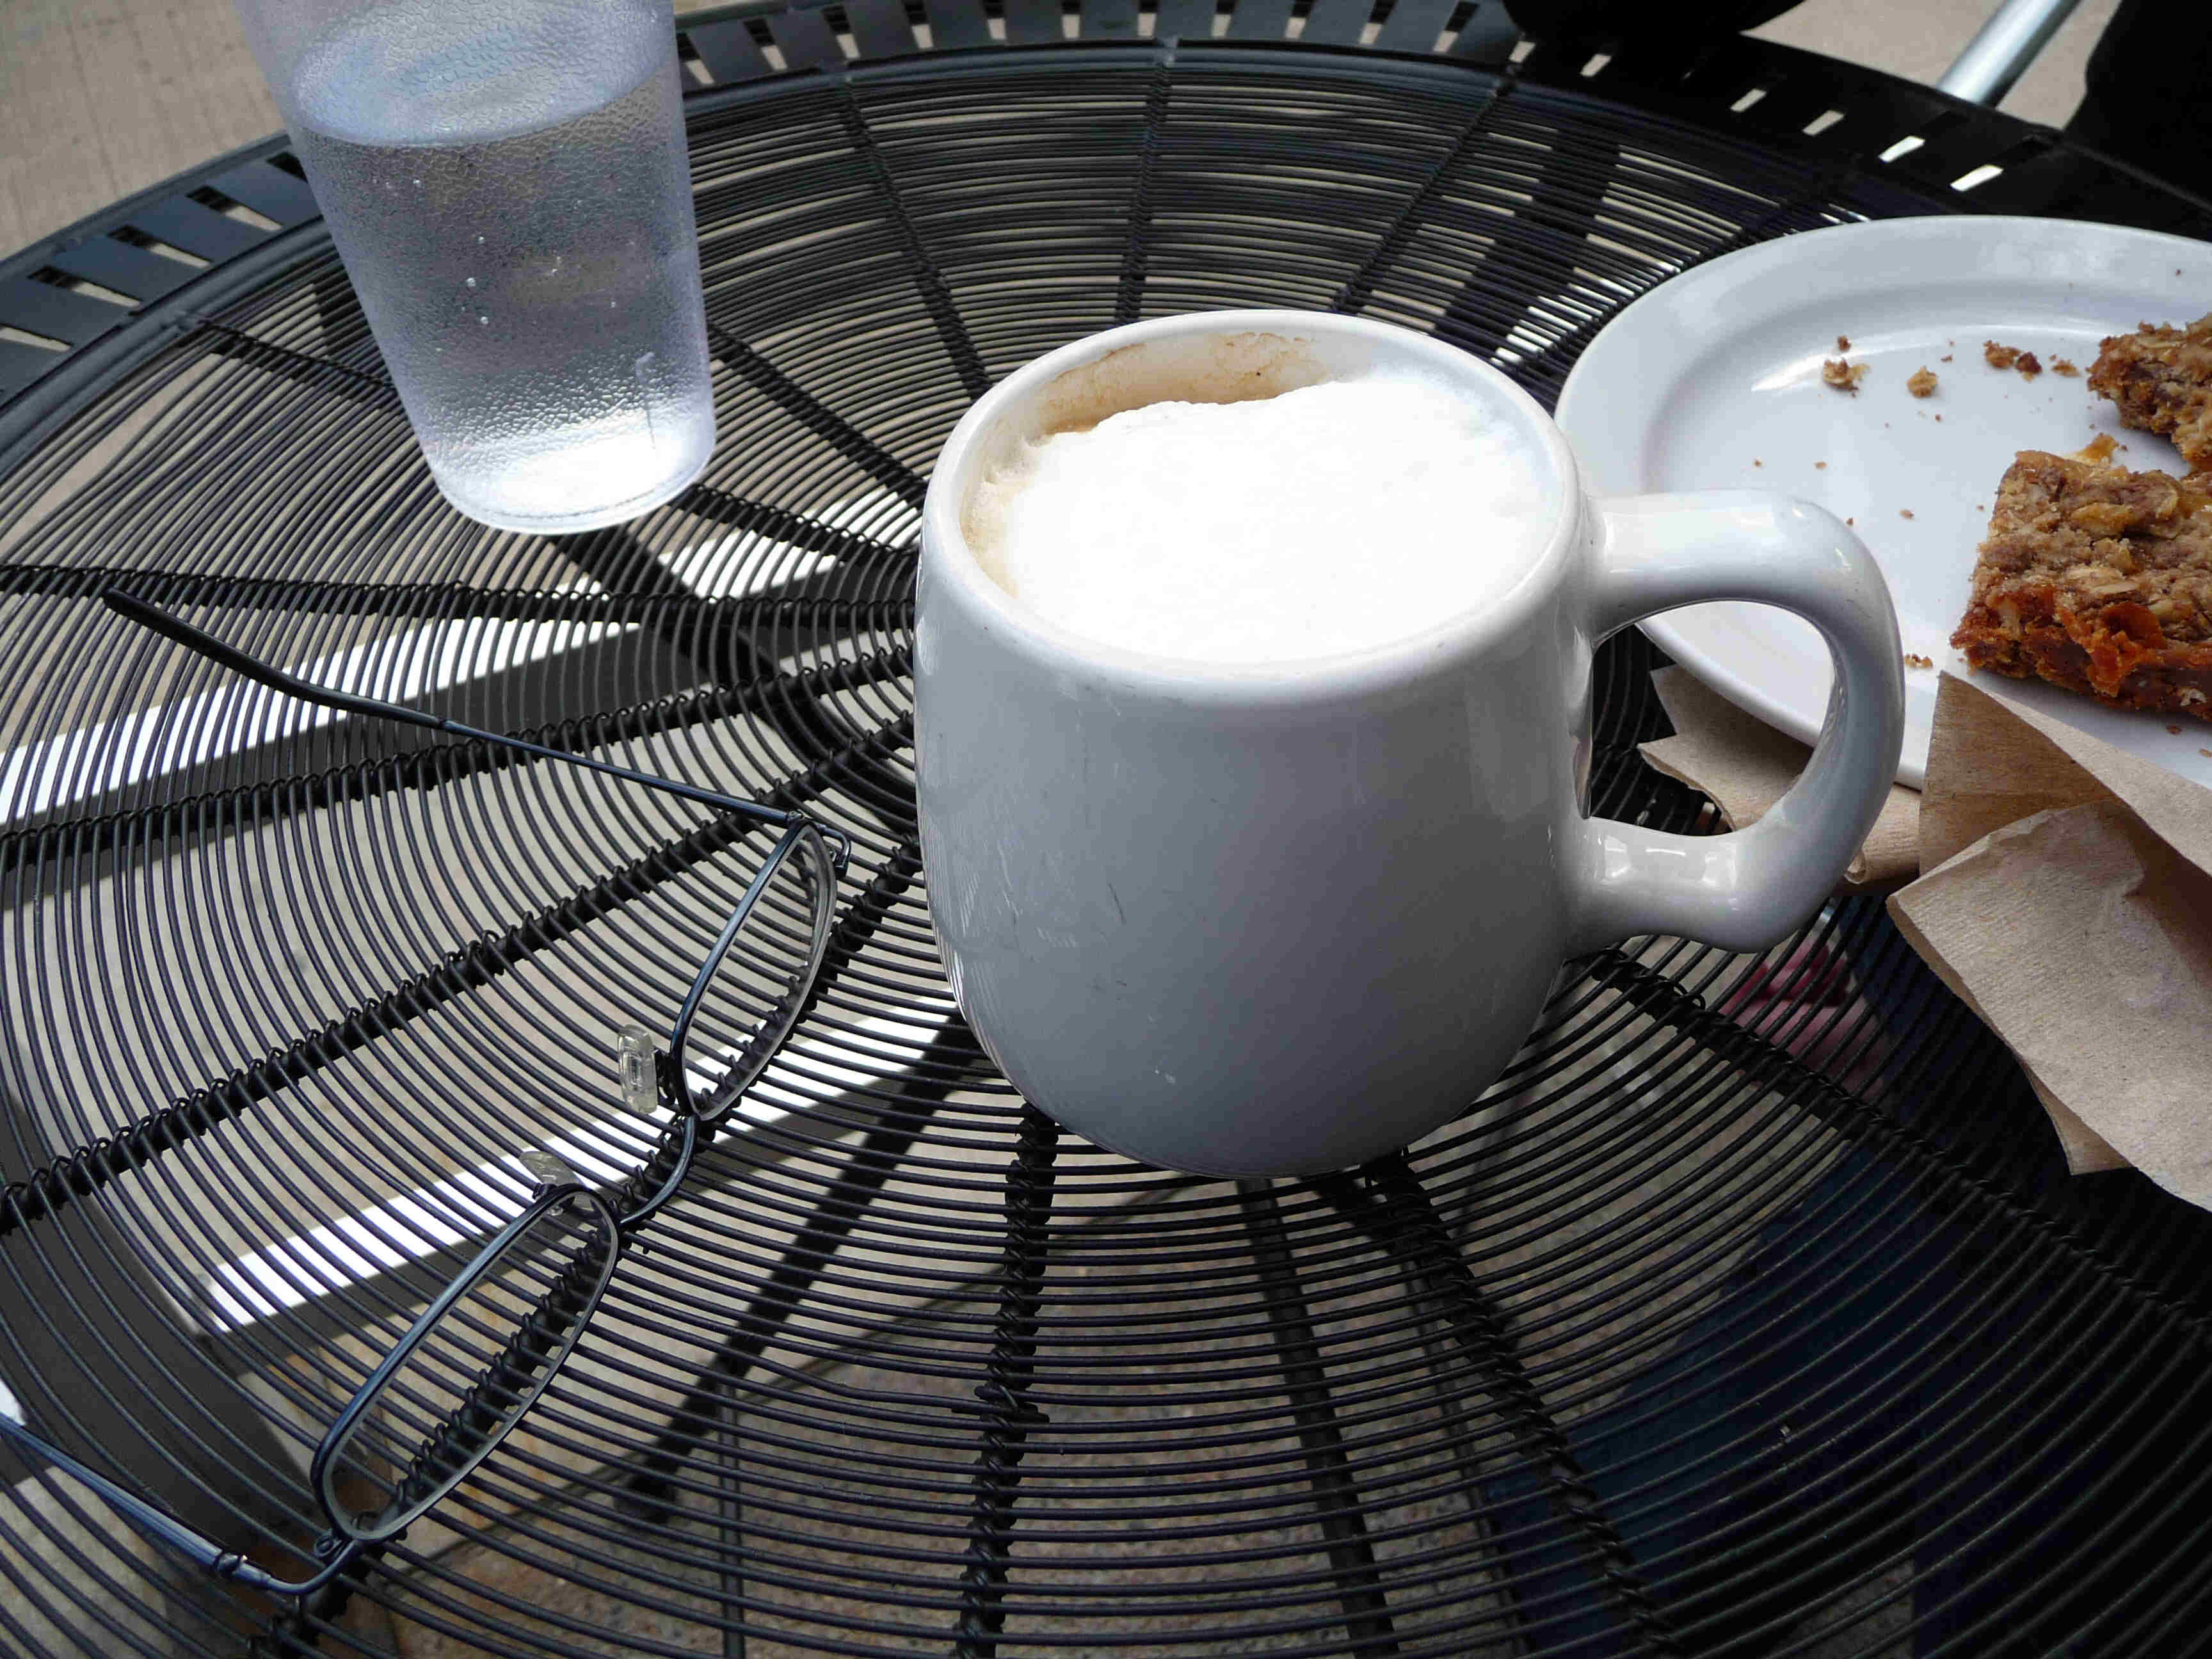 The cappuccino comes in a mug.